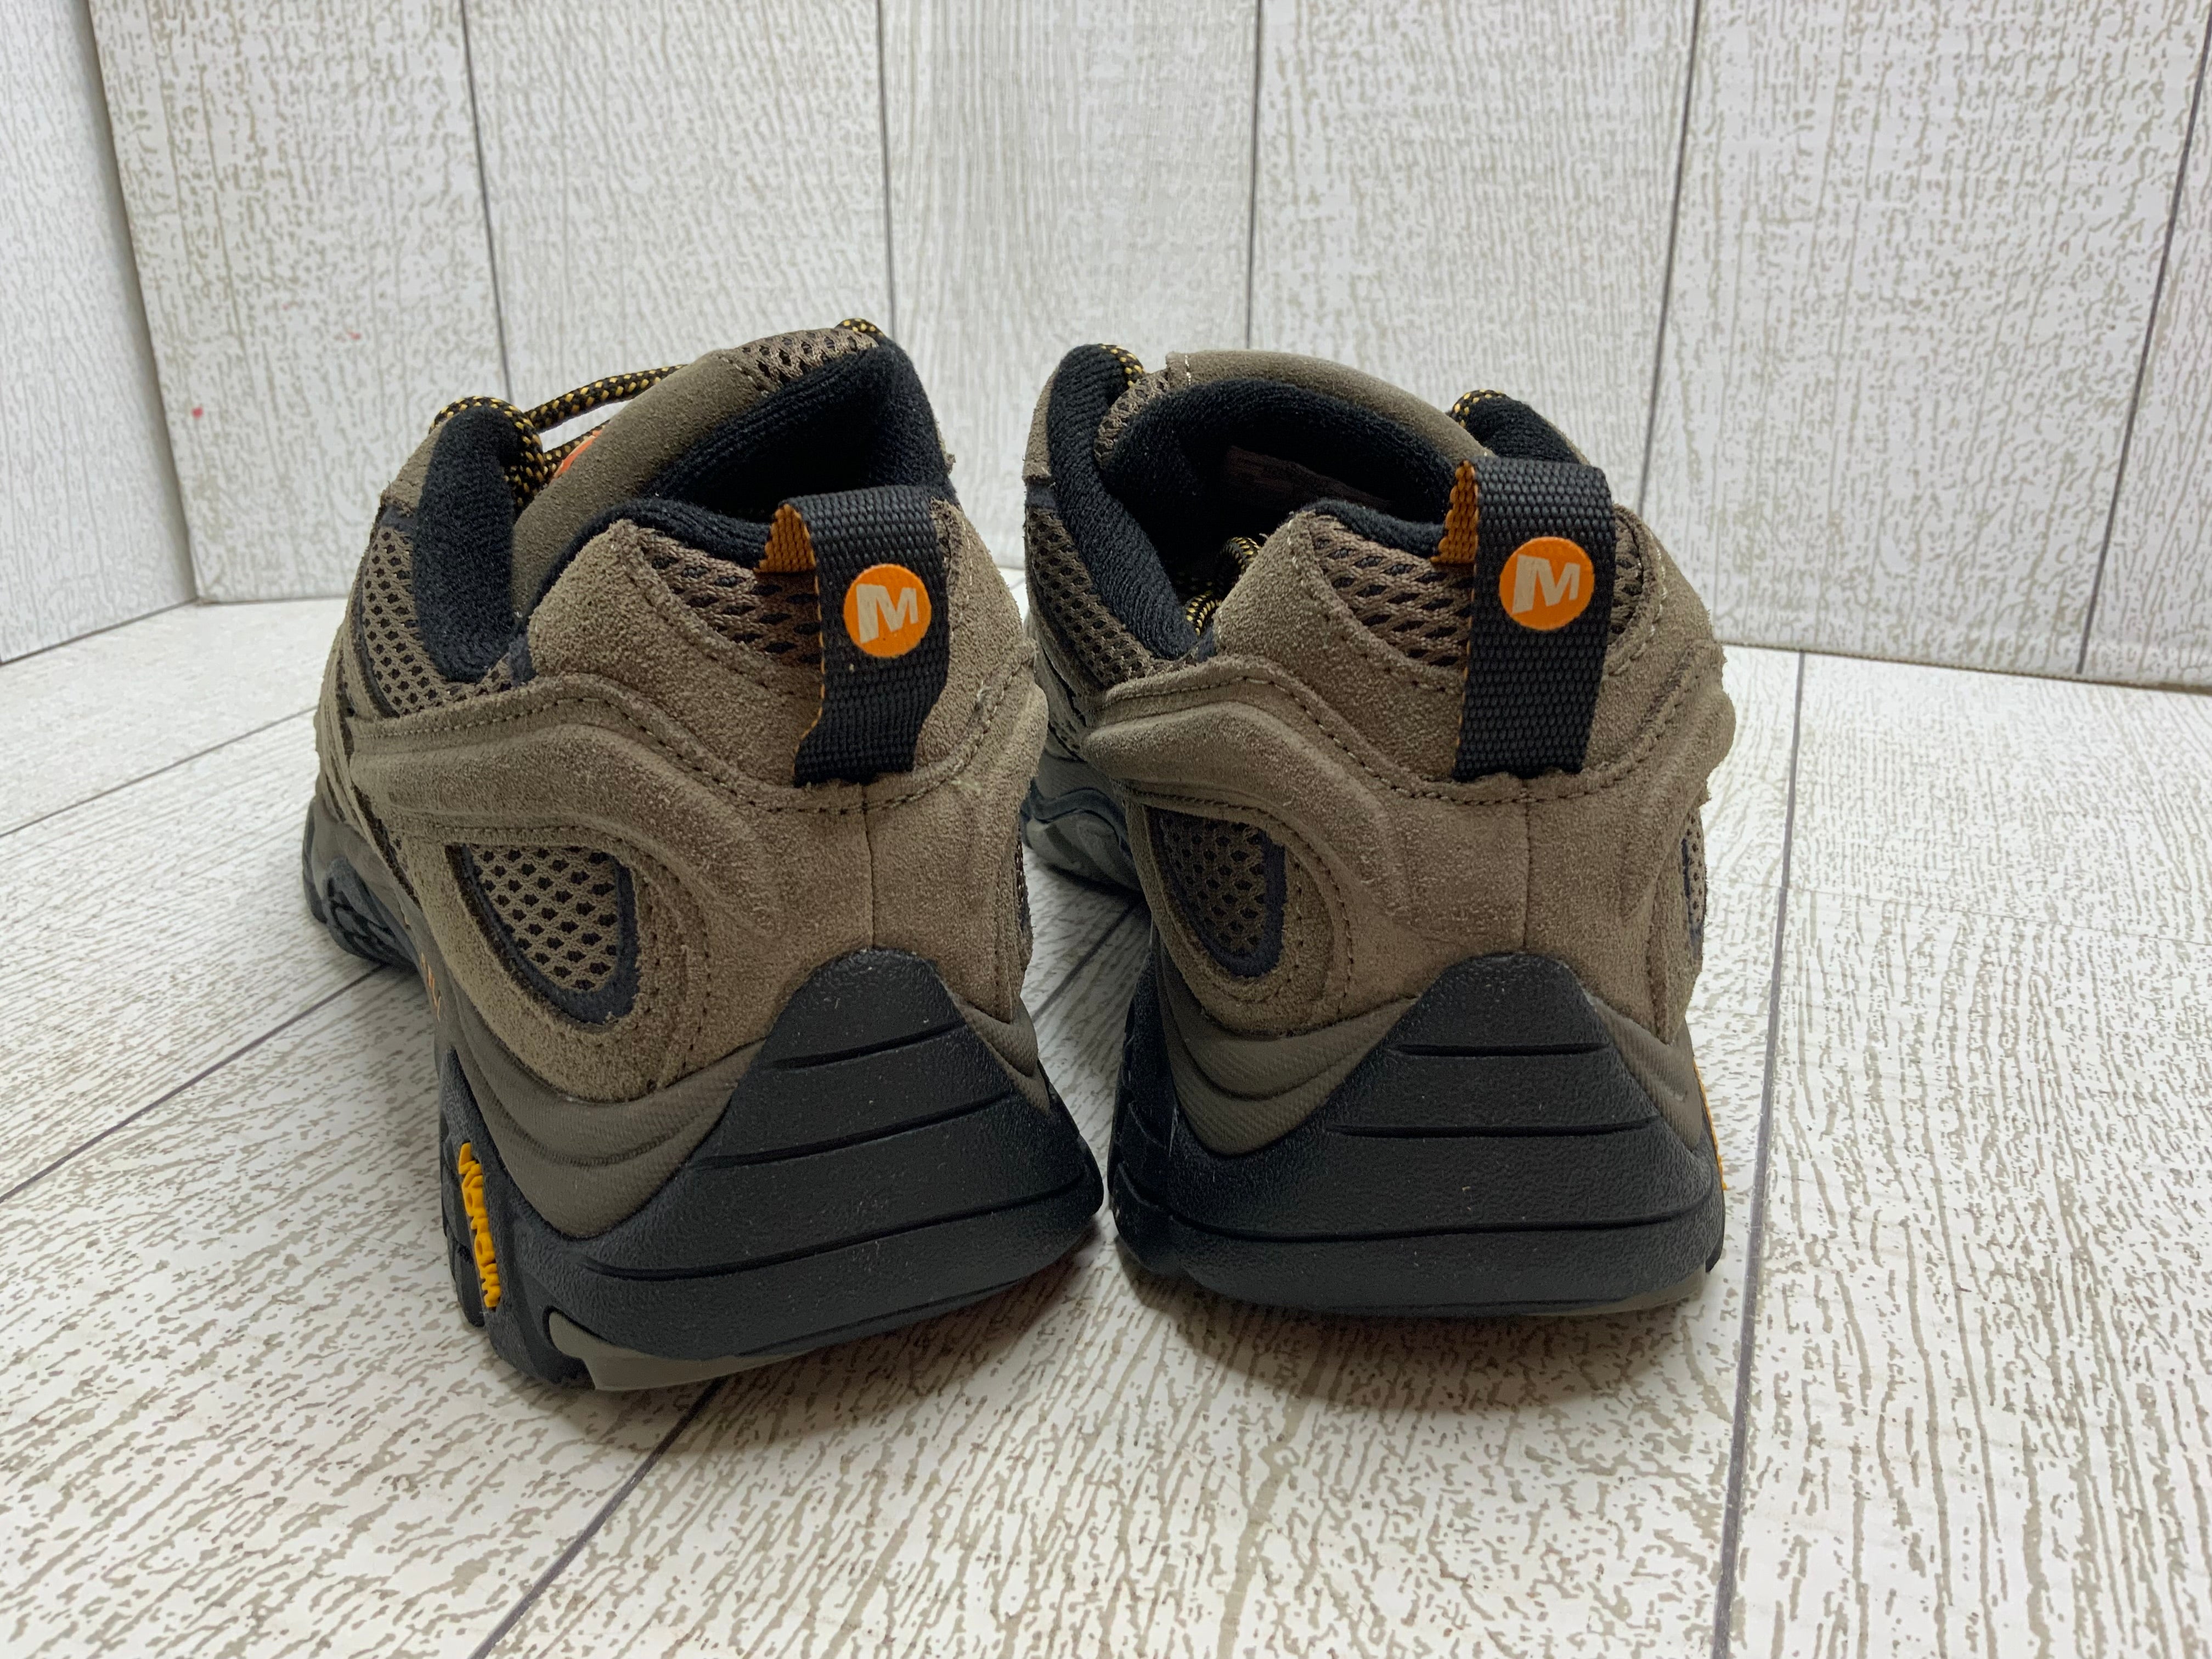 Merrell Men's Moab 2 Vent Hiking Shoe (Size 10.5) (Walnut) (8041349841134)